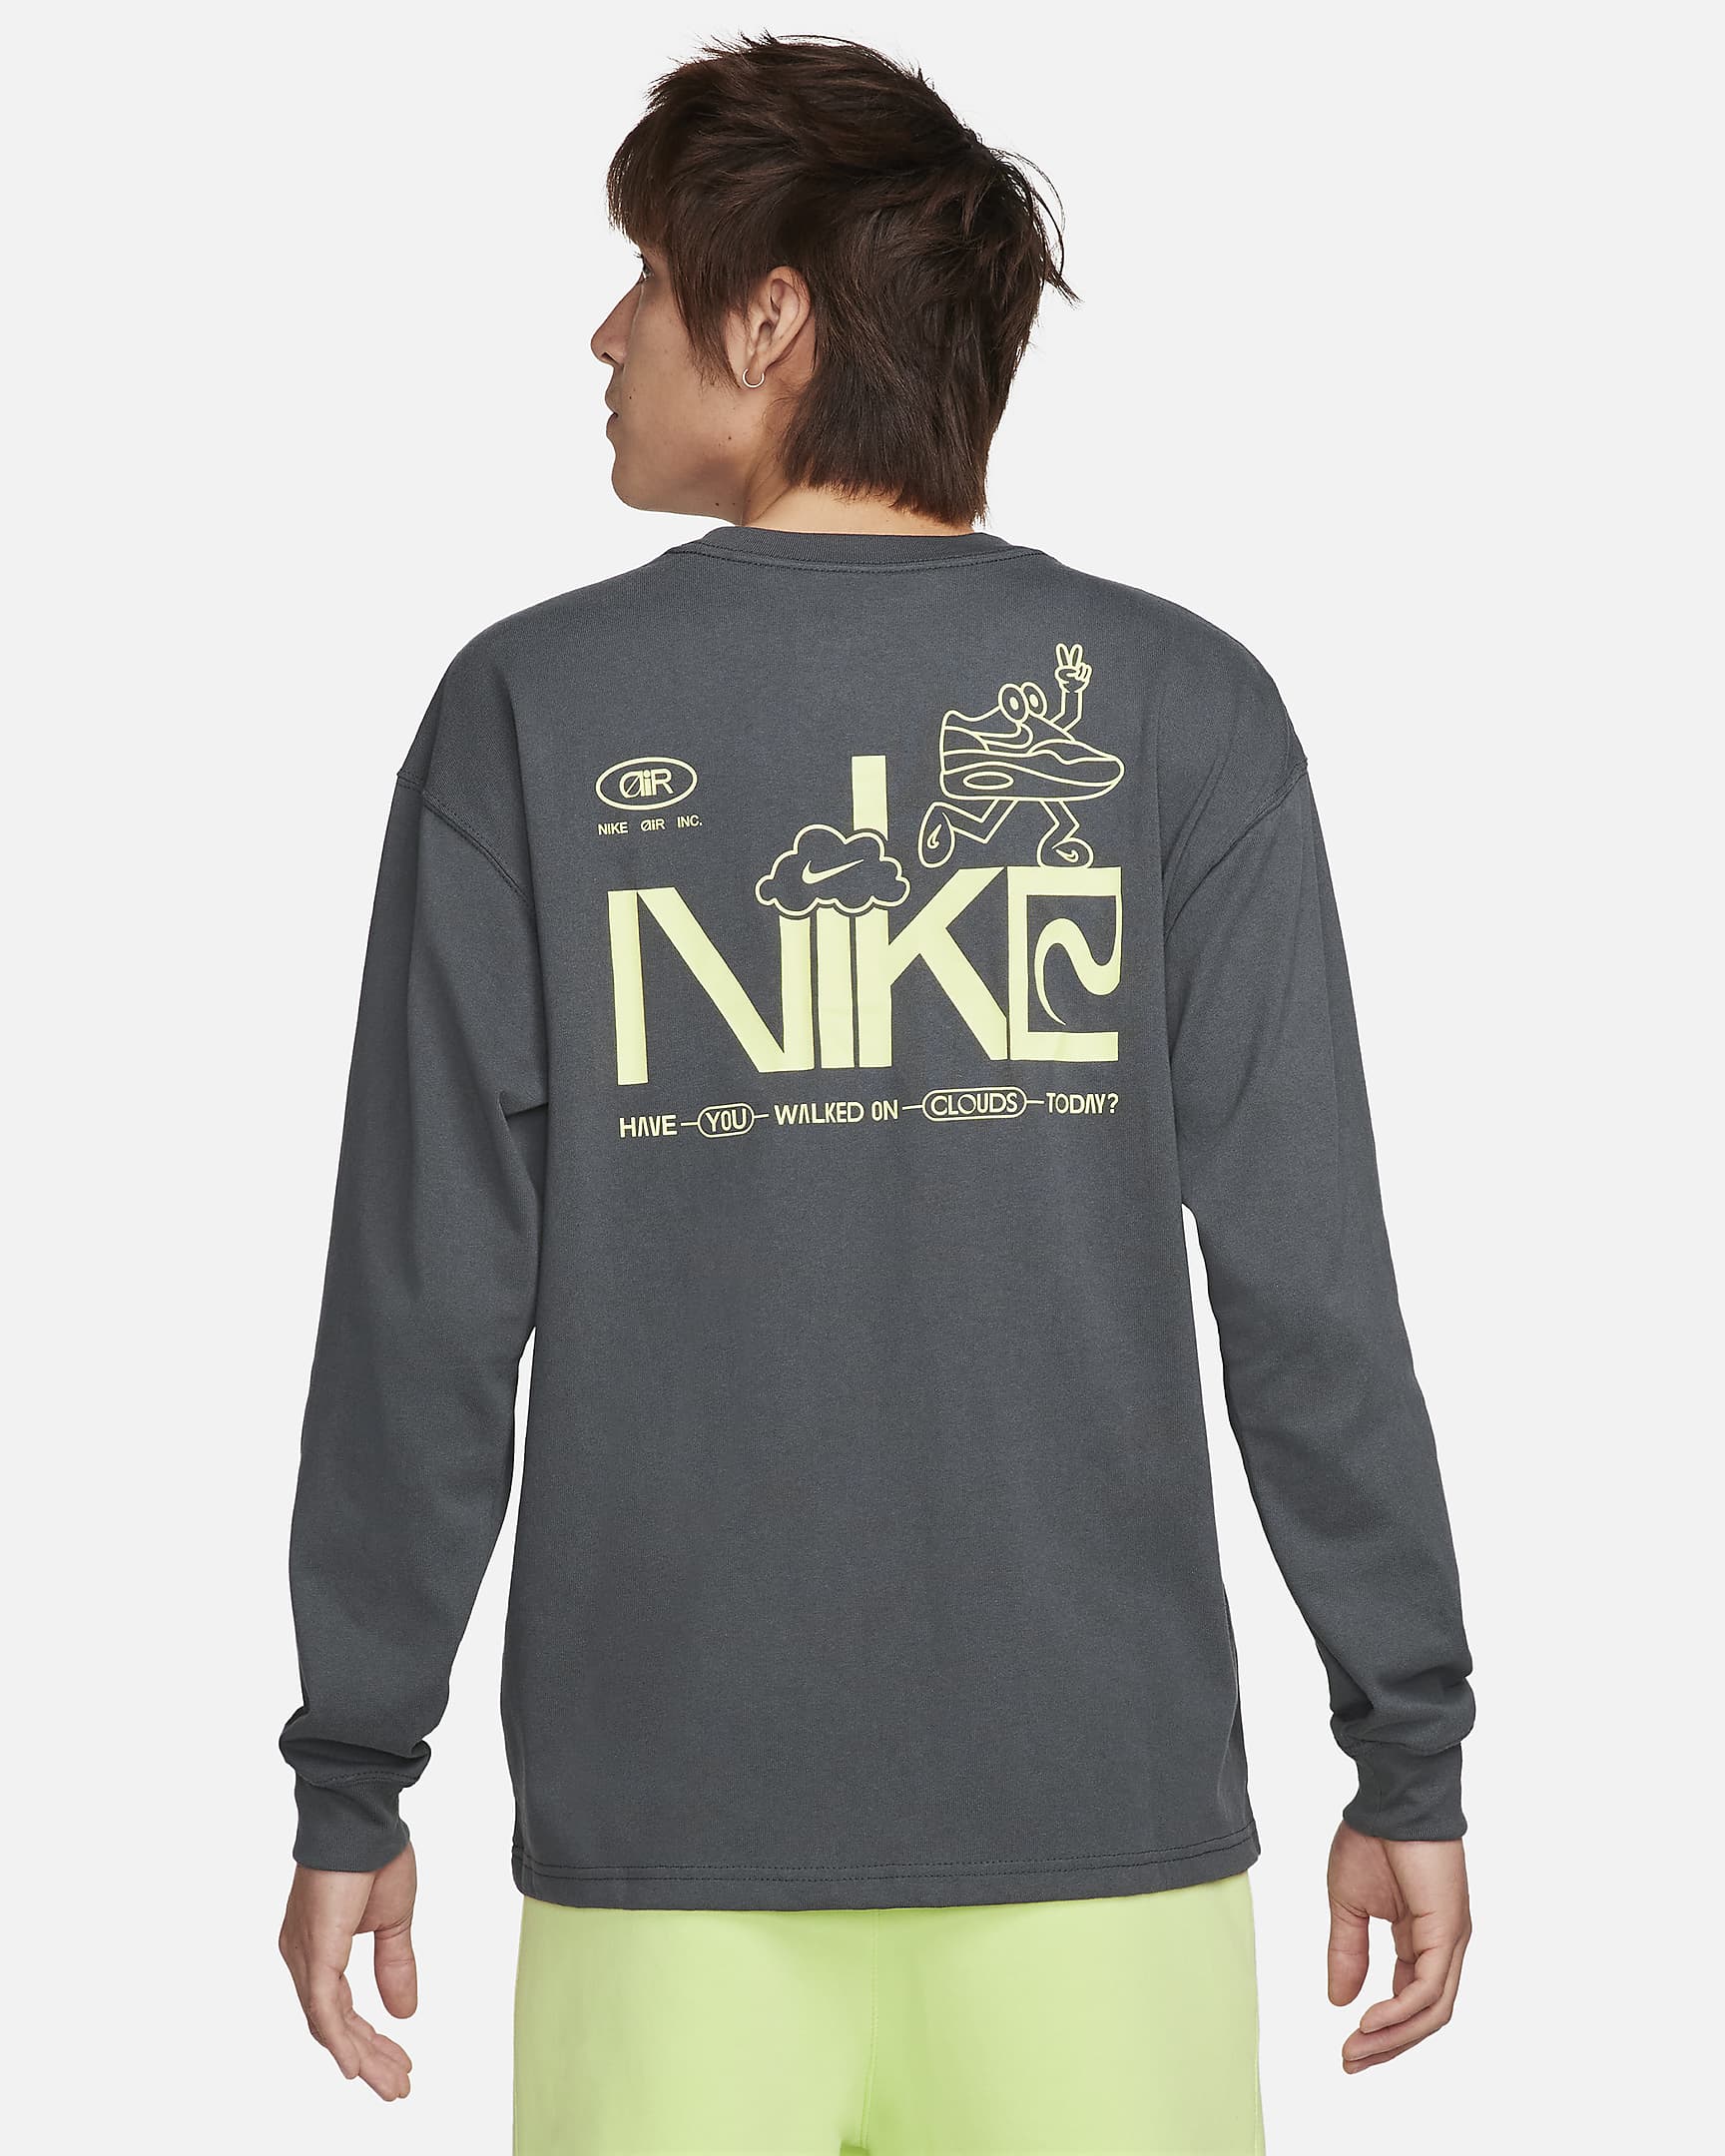 Nike Sportswear Men's Long-Sleeve T-Shirt. Nike IL